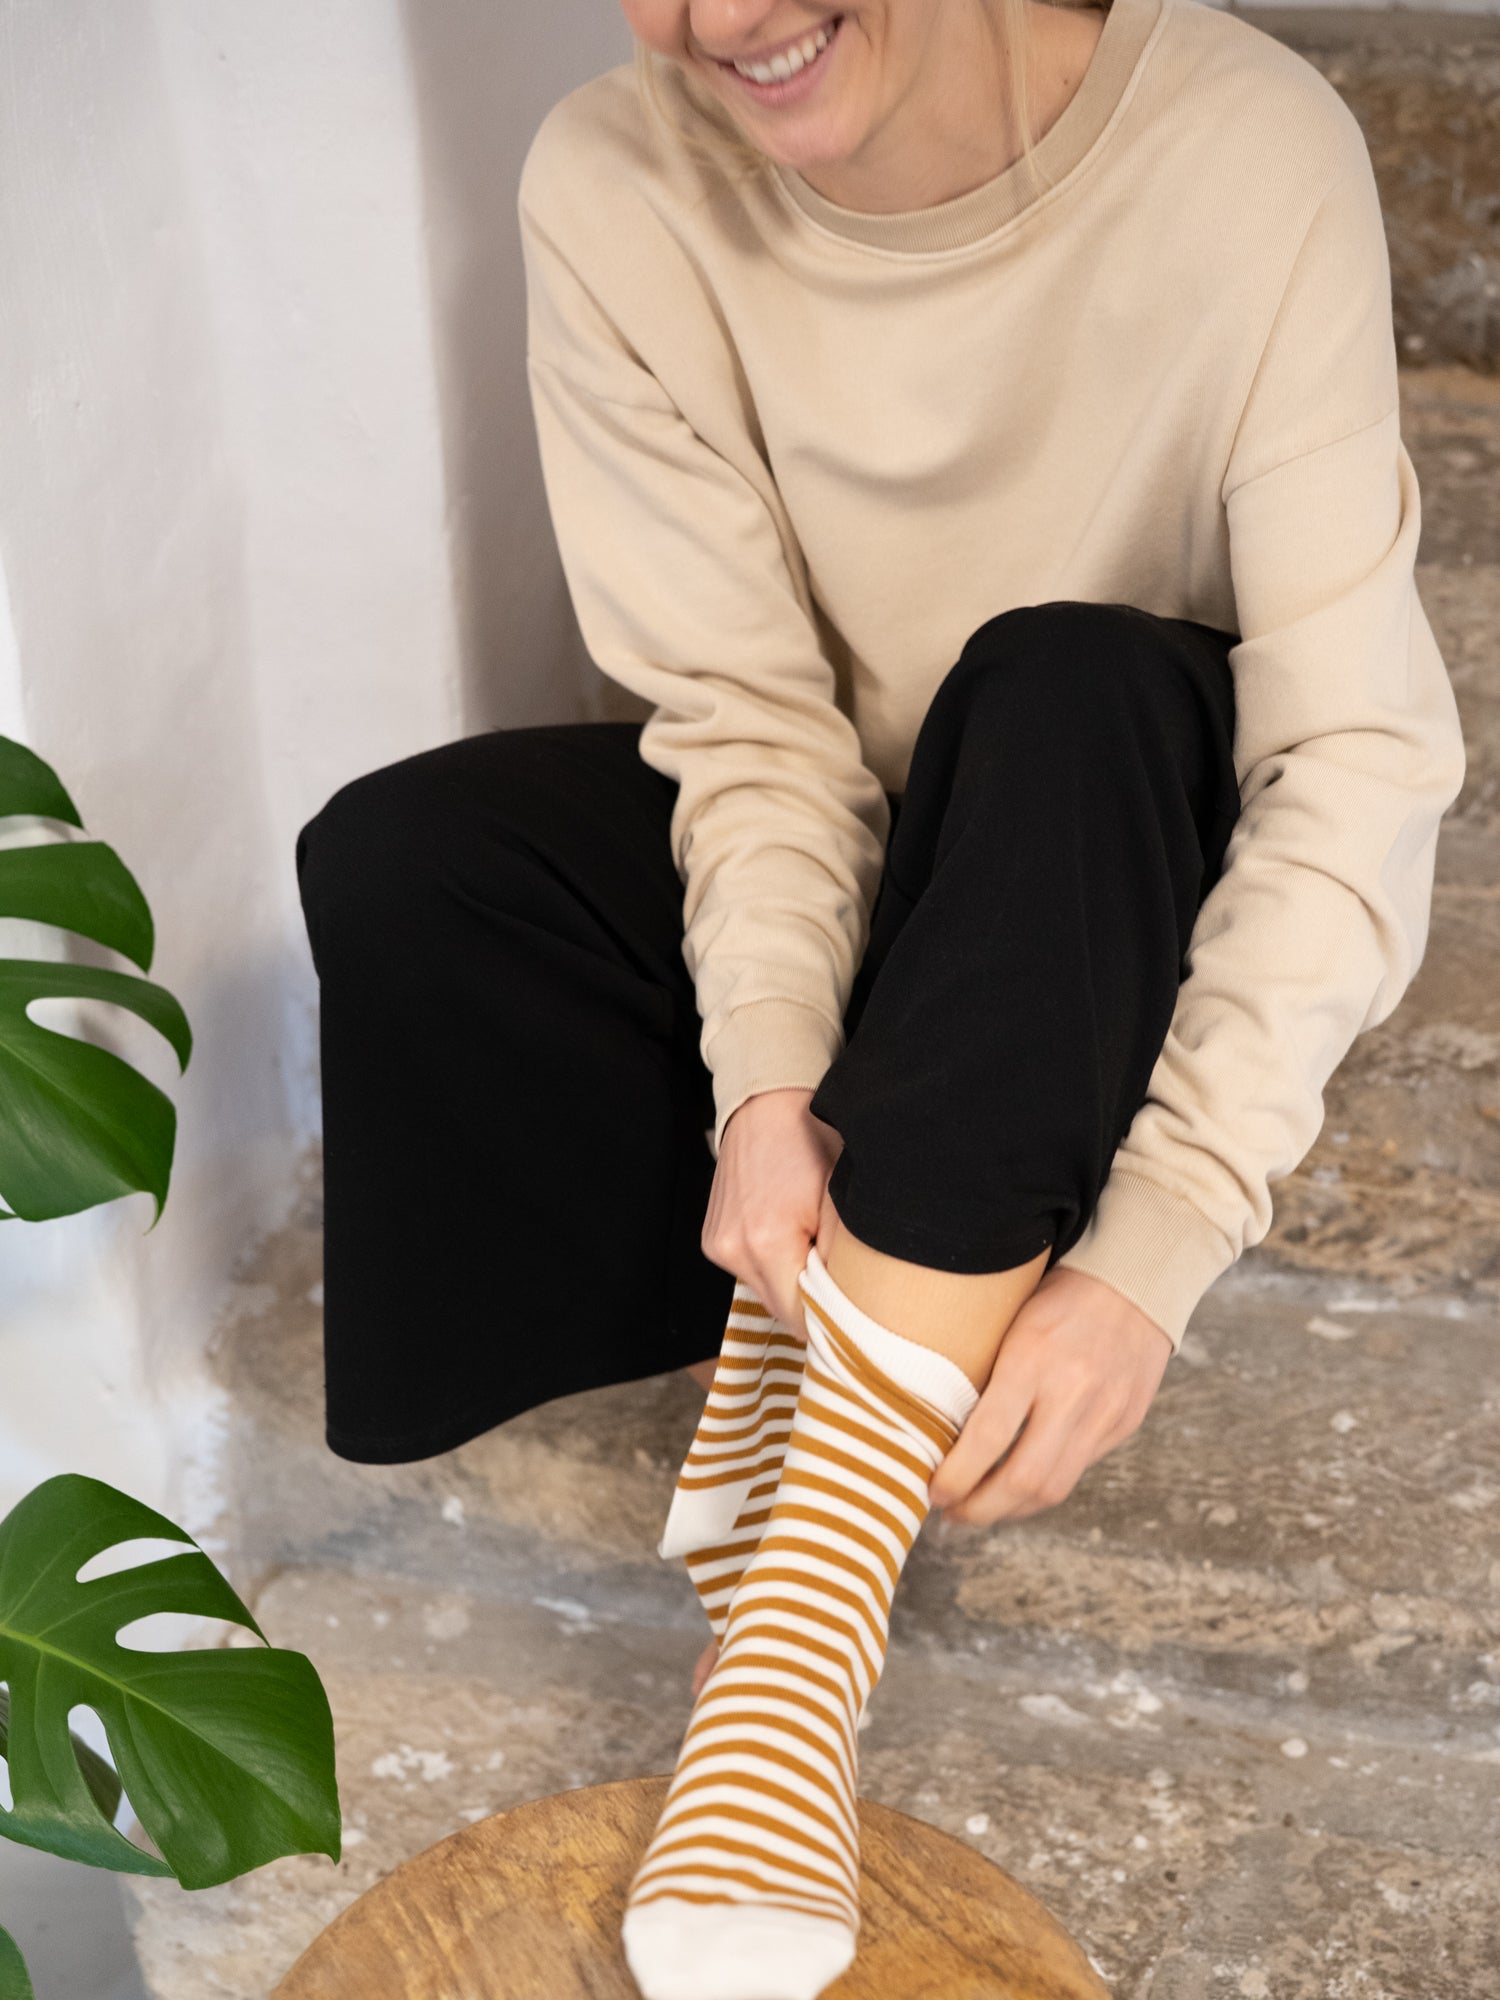 Nachhaltige Fair Fashion Unisex Socken von FUXBAU in cremeweiss senf gestreift aus 100% Biobaumwolle.